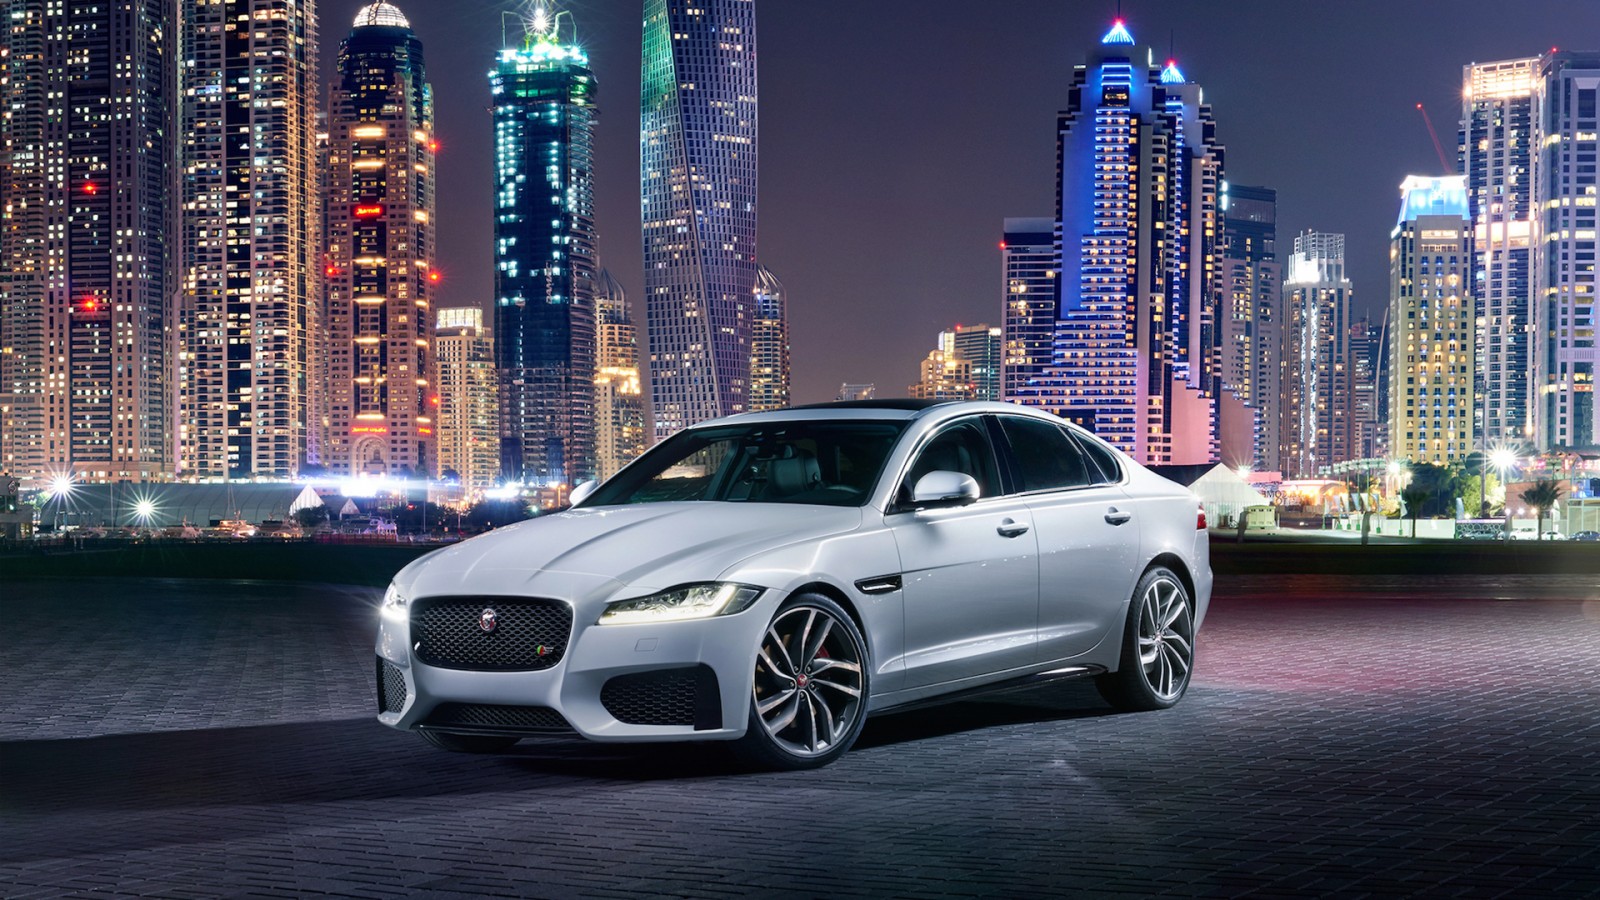 jaguar car wallpaper,land vehicle,car,luxury vehicle,vehicle,automotive design